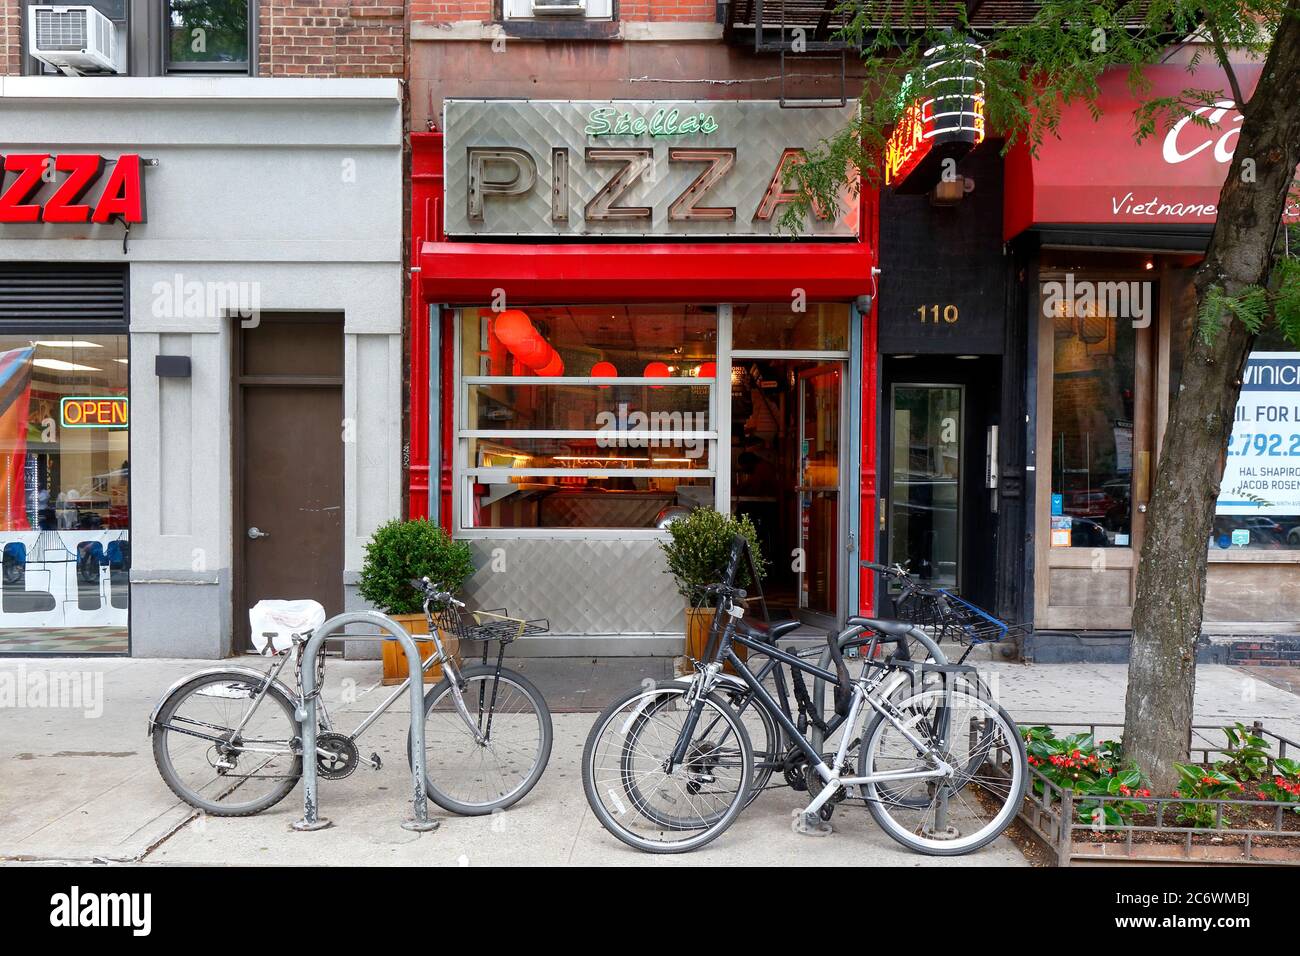 Stella's Pizza, 110 Ninth Ave, New York, NYC Foto von einem Pizzaladen im Chelsea-Viertel von Manhattan. Stockfoto